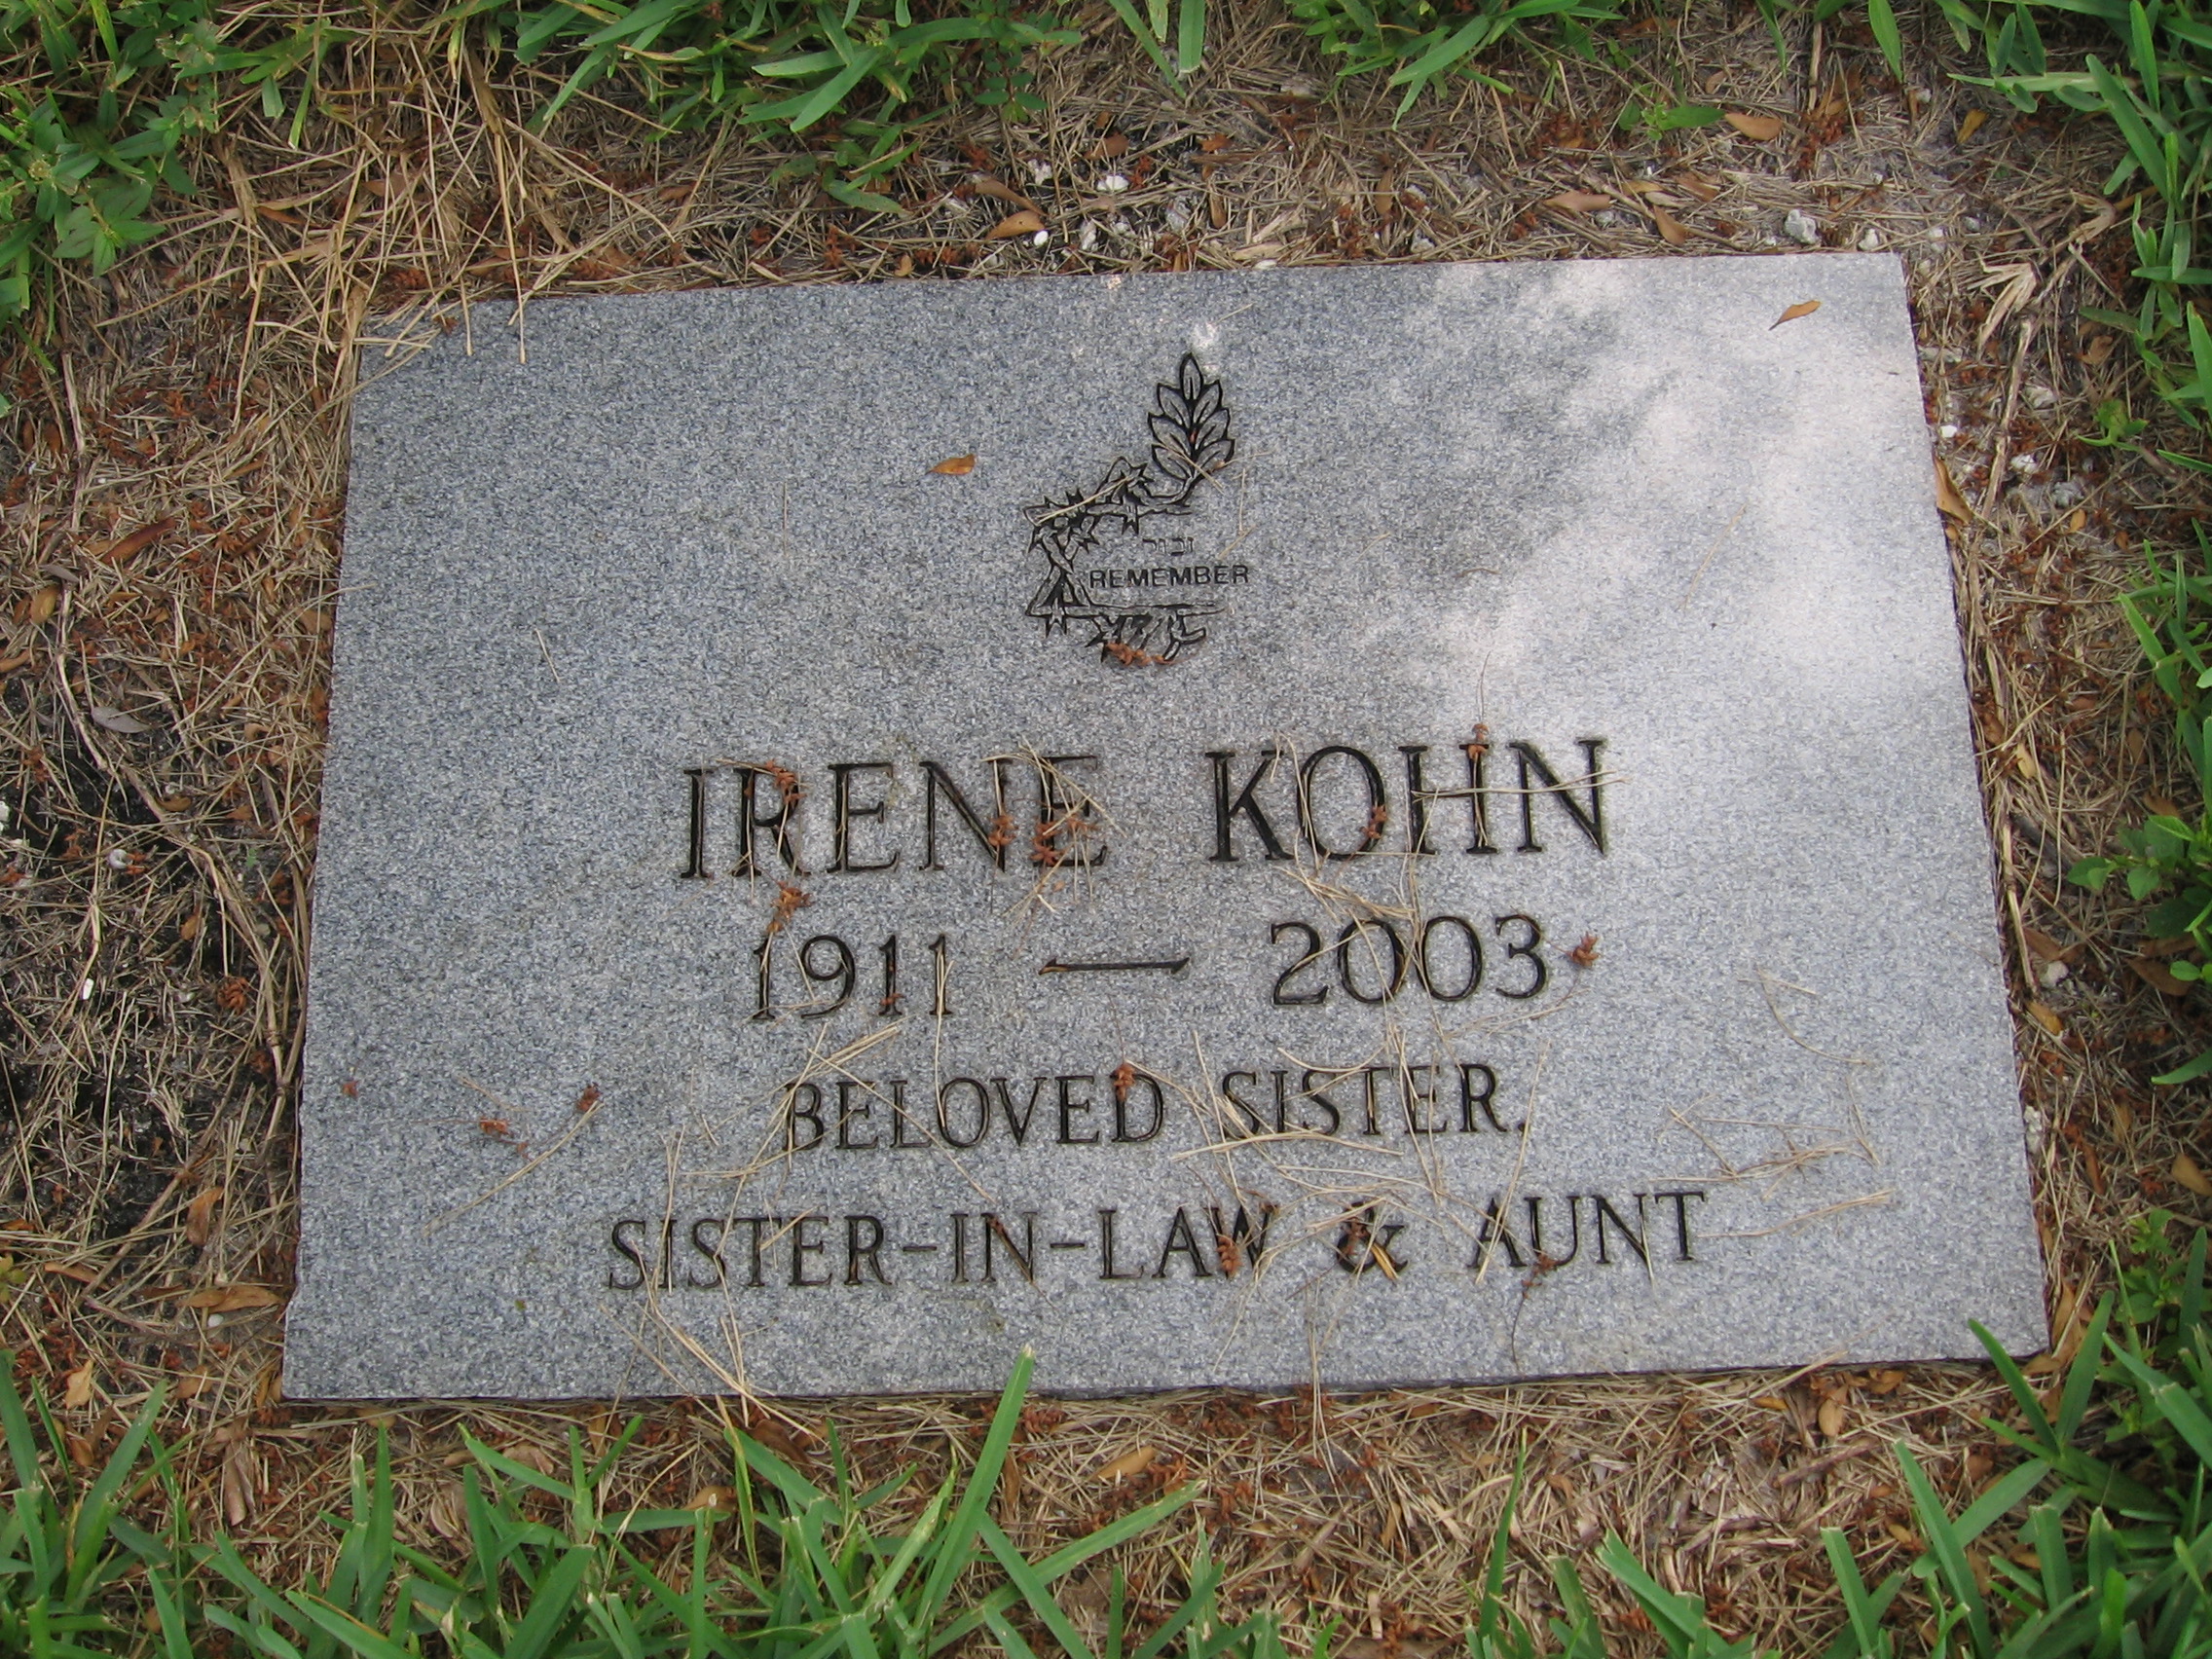 Irene Kohn